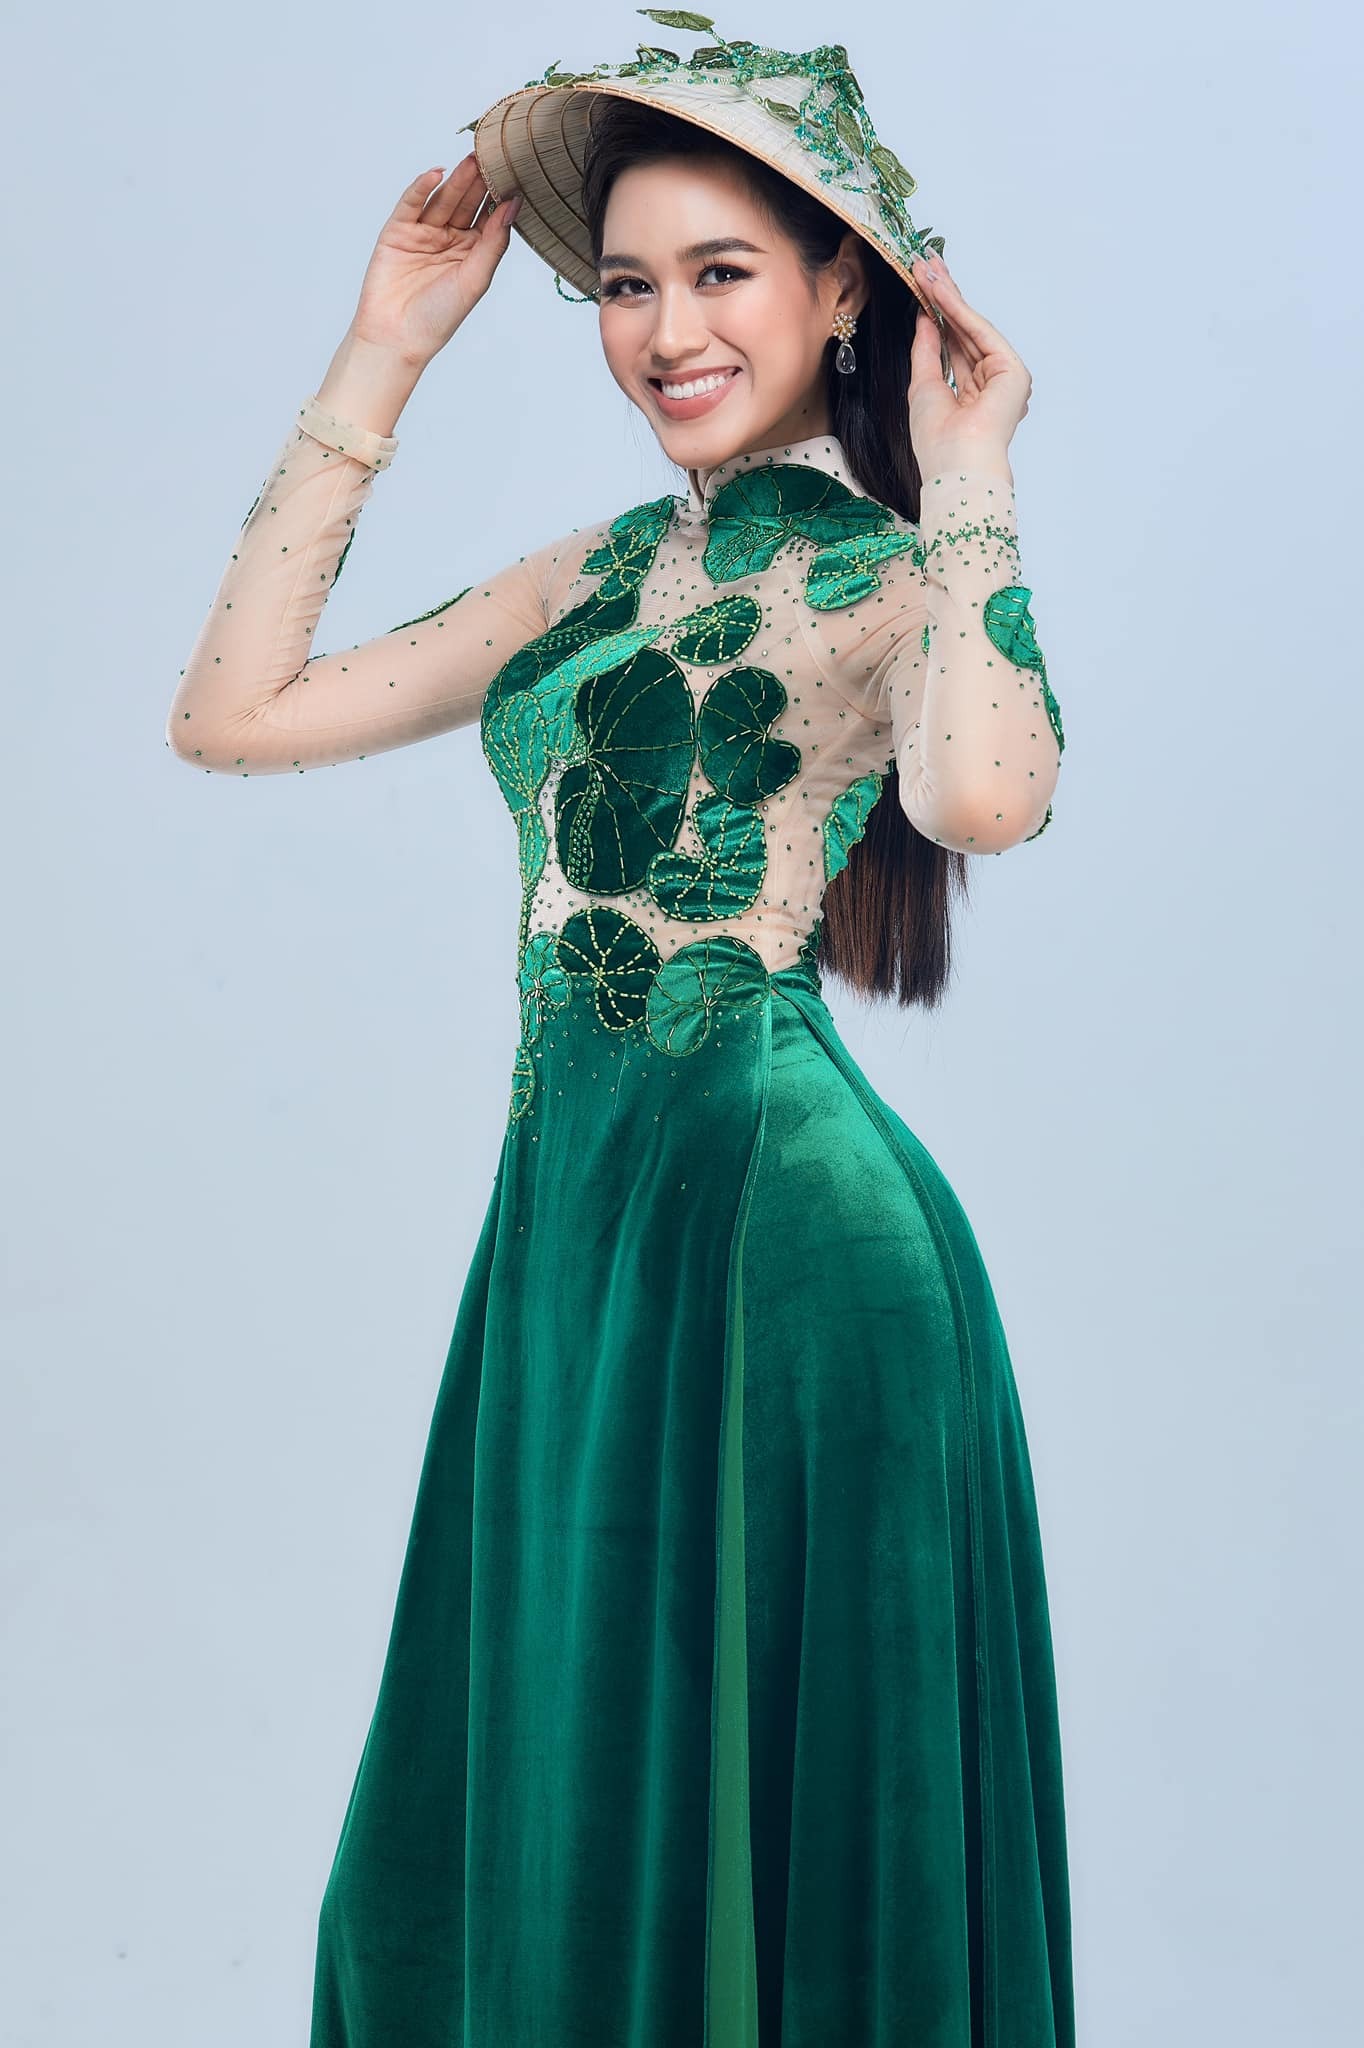 Showbiz 16/12: Đỗ Thị Hà thông báo trước CK Miss World 2021; Hồ Văn Cường có động thái hậu lùm xùm với Phi Nhung 1